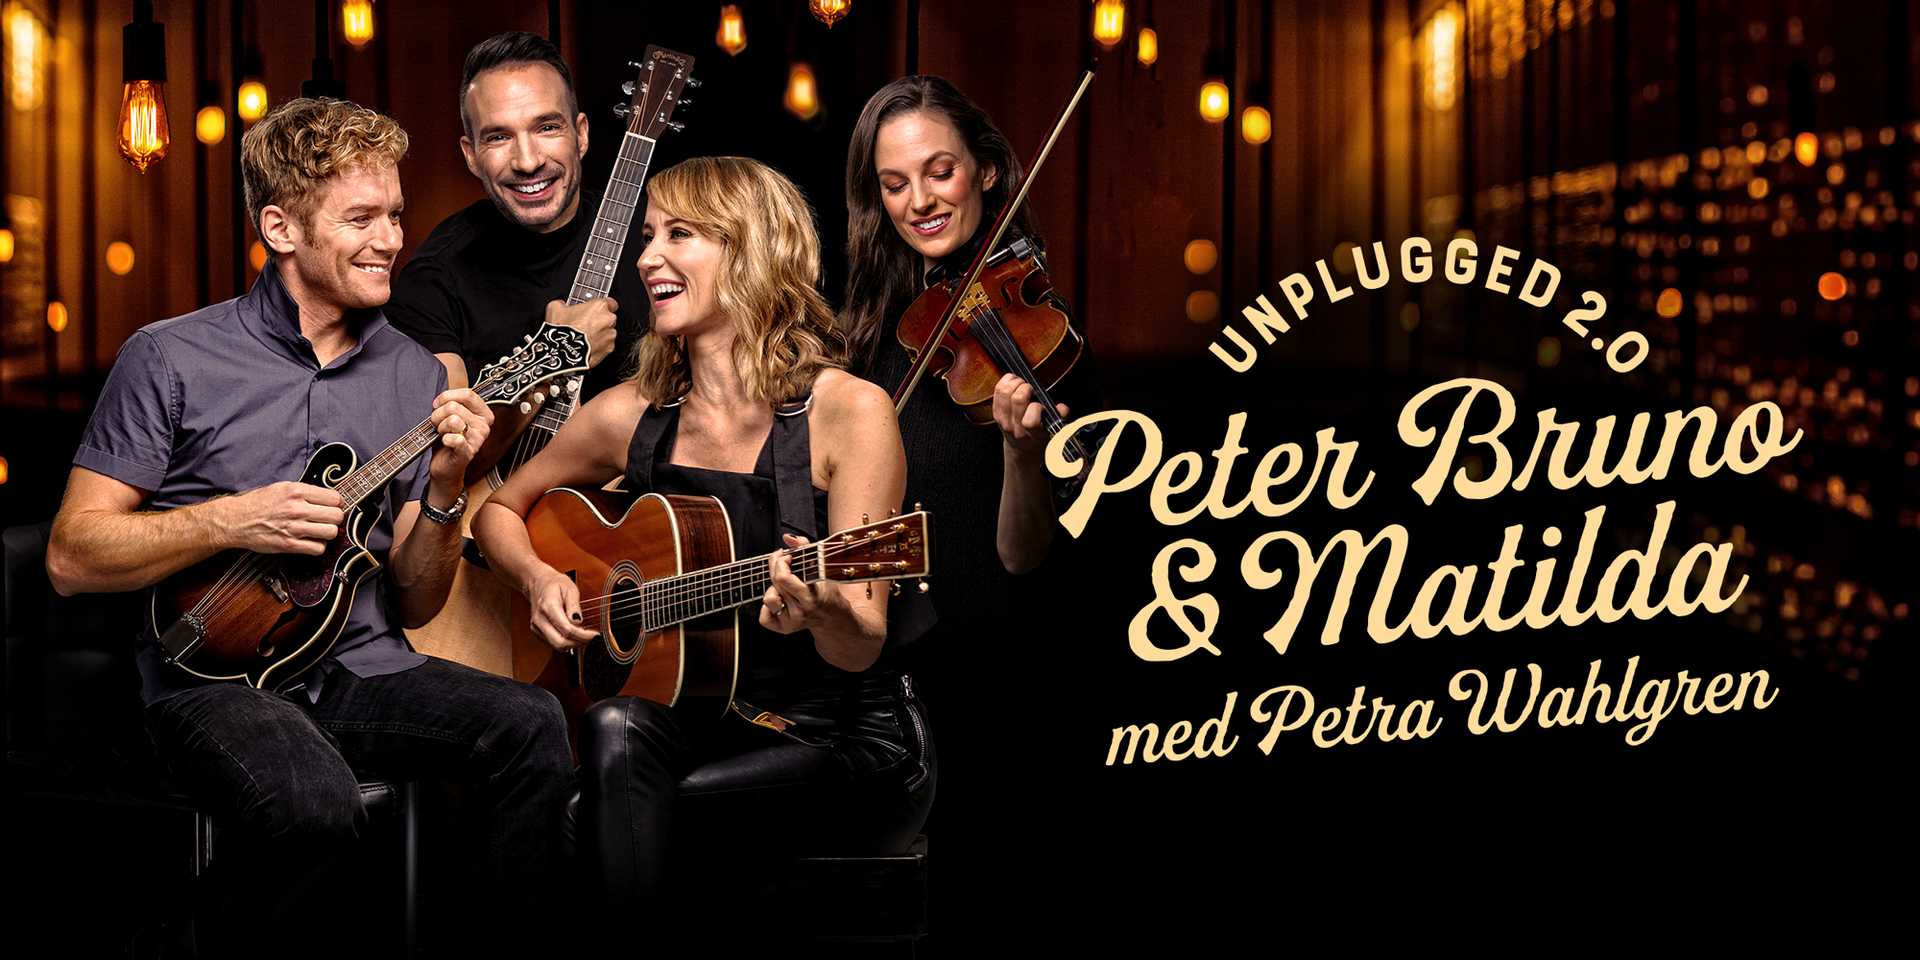 Unplugged 2.0 med Peter, Bruno, Matilda och Petra Wahlgren